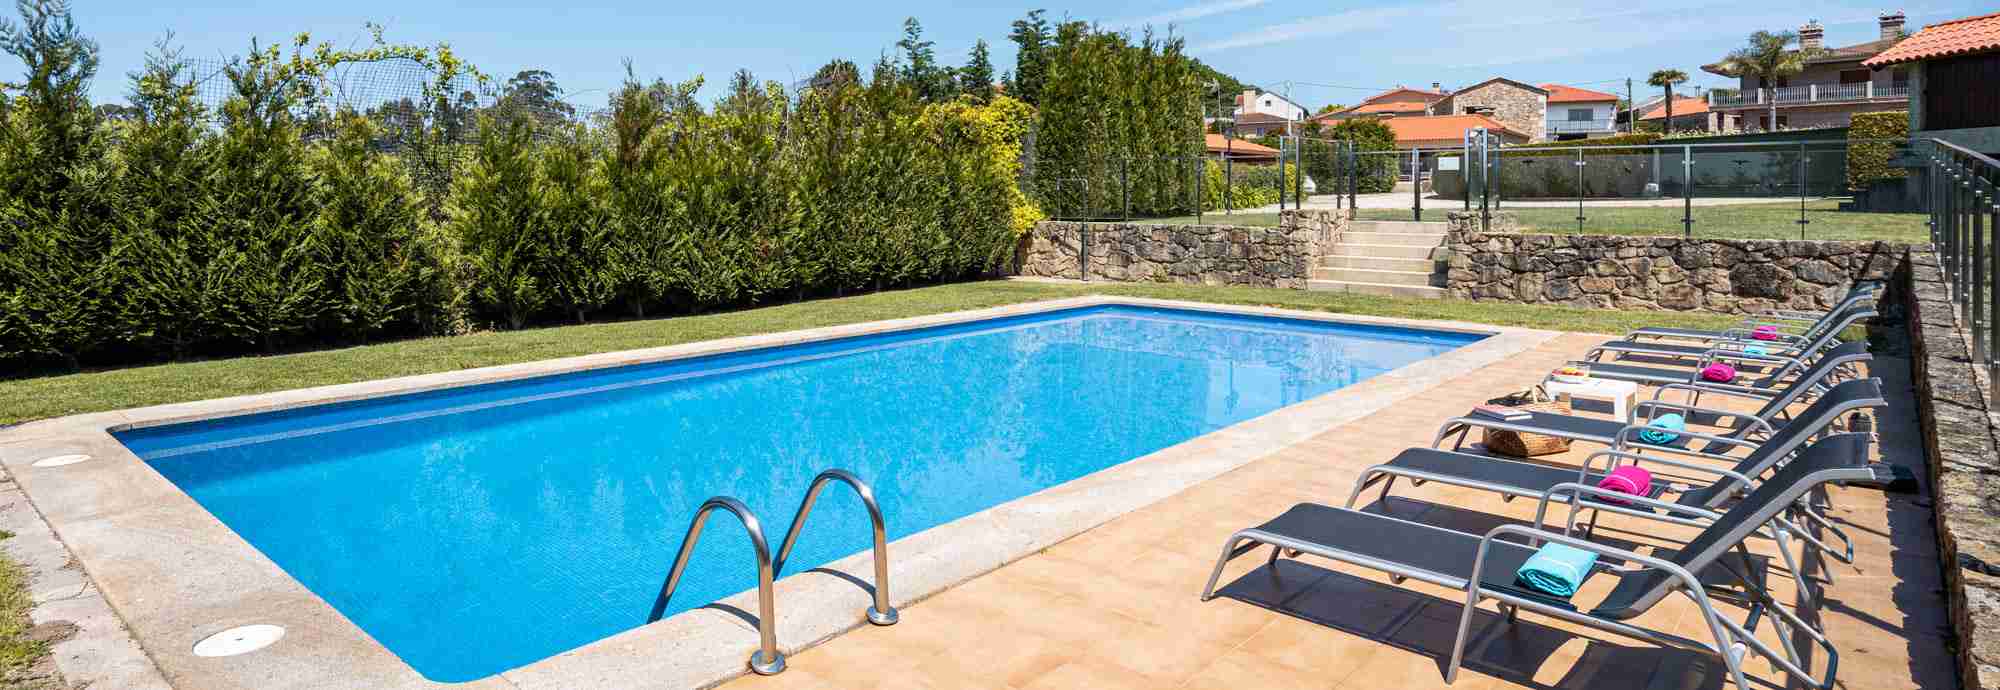 Casa rural bien equipada y organizada con piscina vallada en aldea gallega